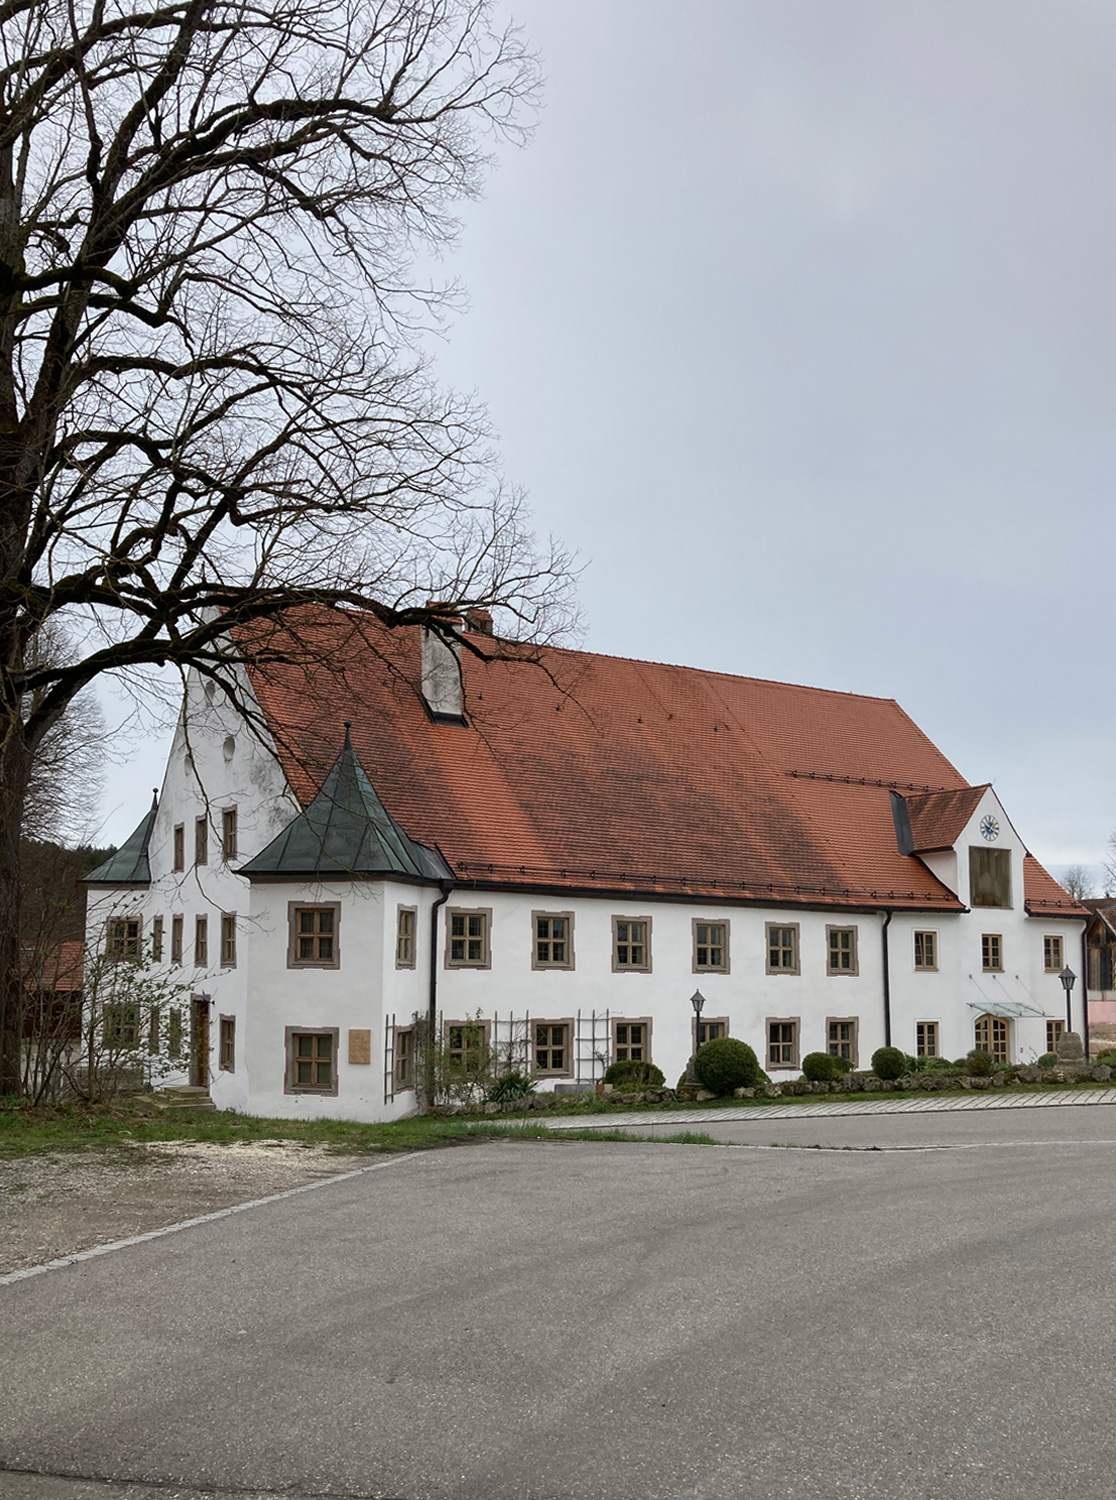 Altes Schloss Valley im Landkreis Miesbach